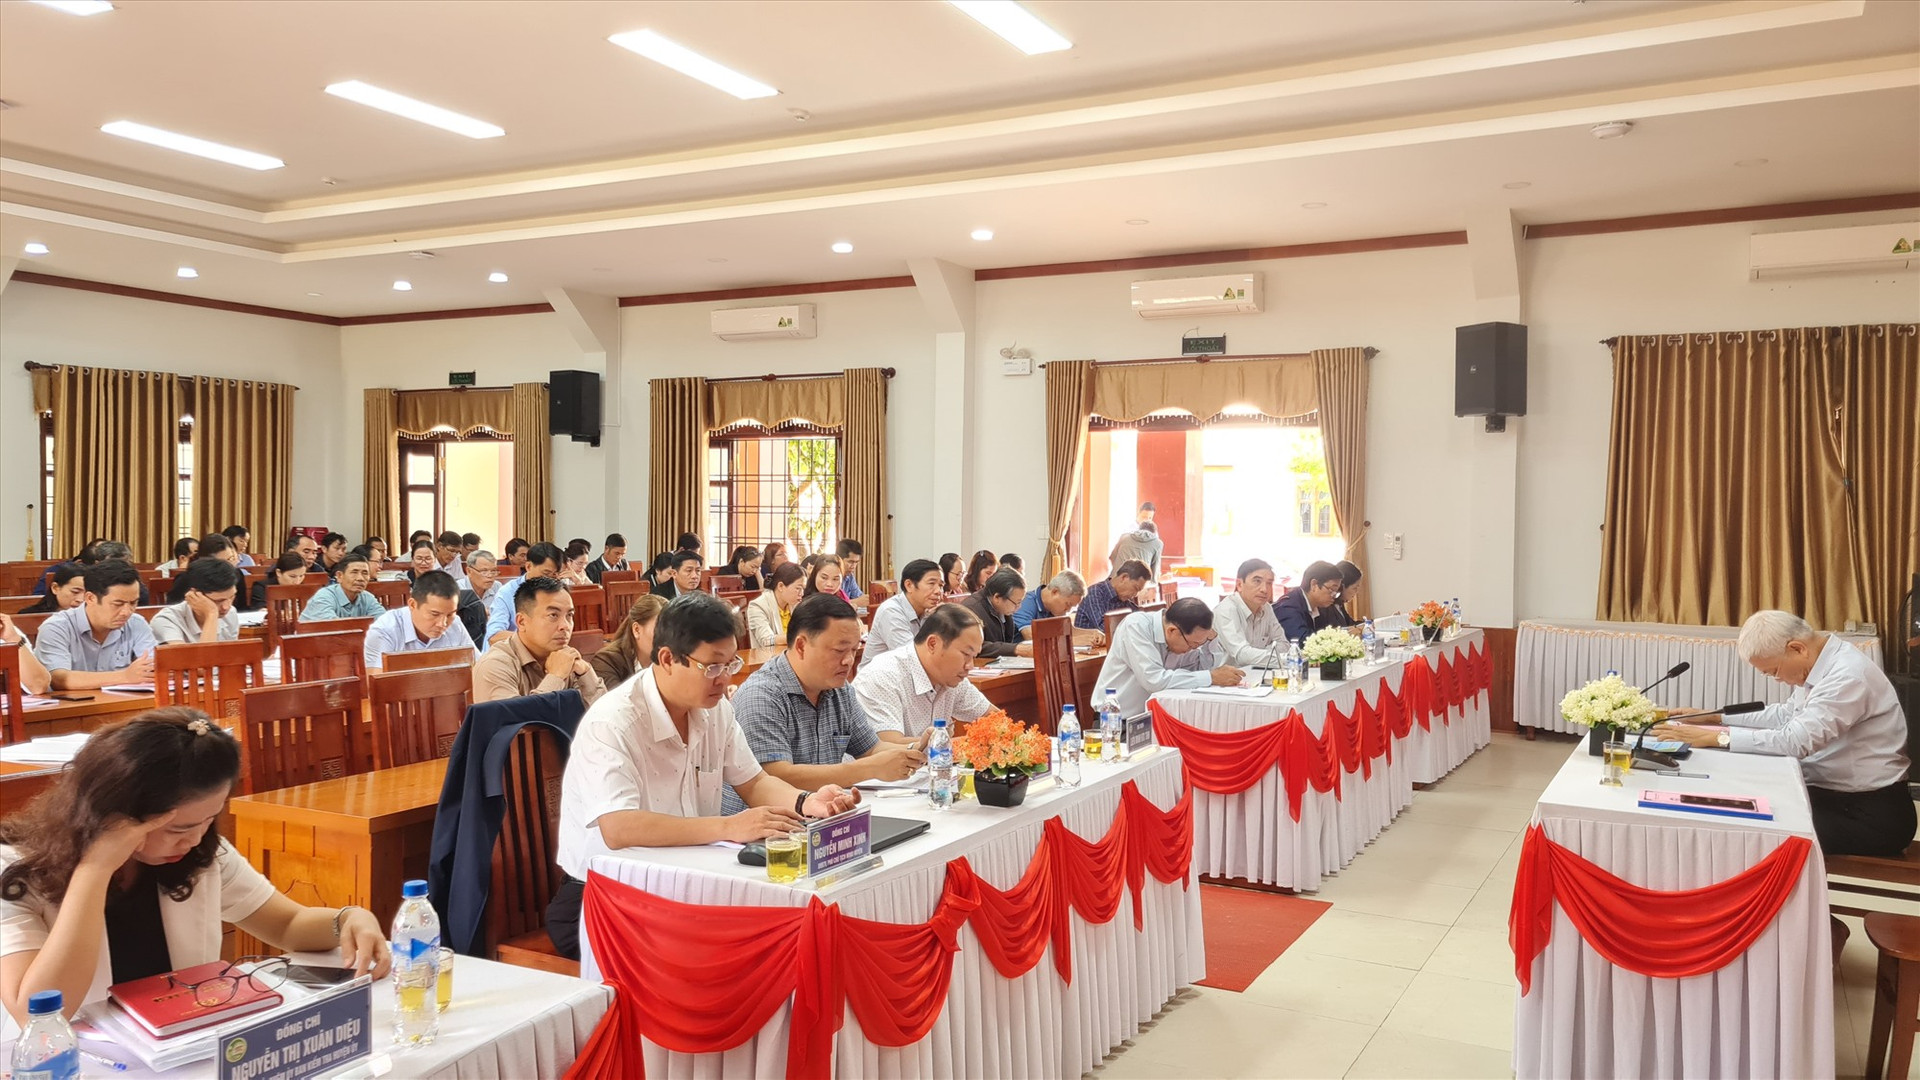 UBND huyện Tiên Phước tổ chức hội nghị đánh giá 5 năm thực hiện phát triển kinh tế hợp tác xã (HTX) và Chương trình mỗi xã một sản phẩm (OCOP) giai đoạn 2018 - 2022.